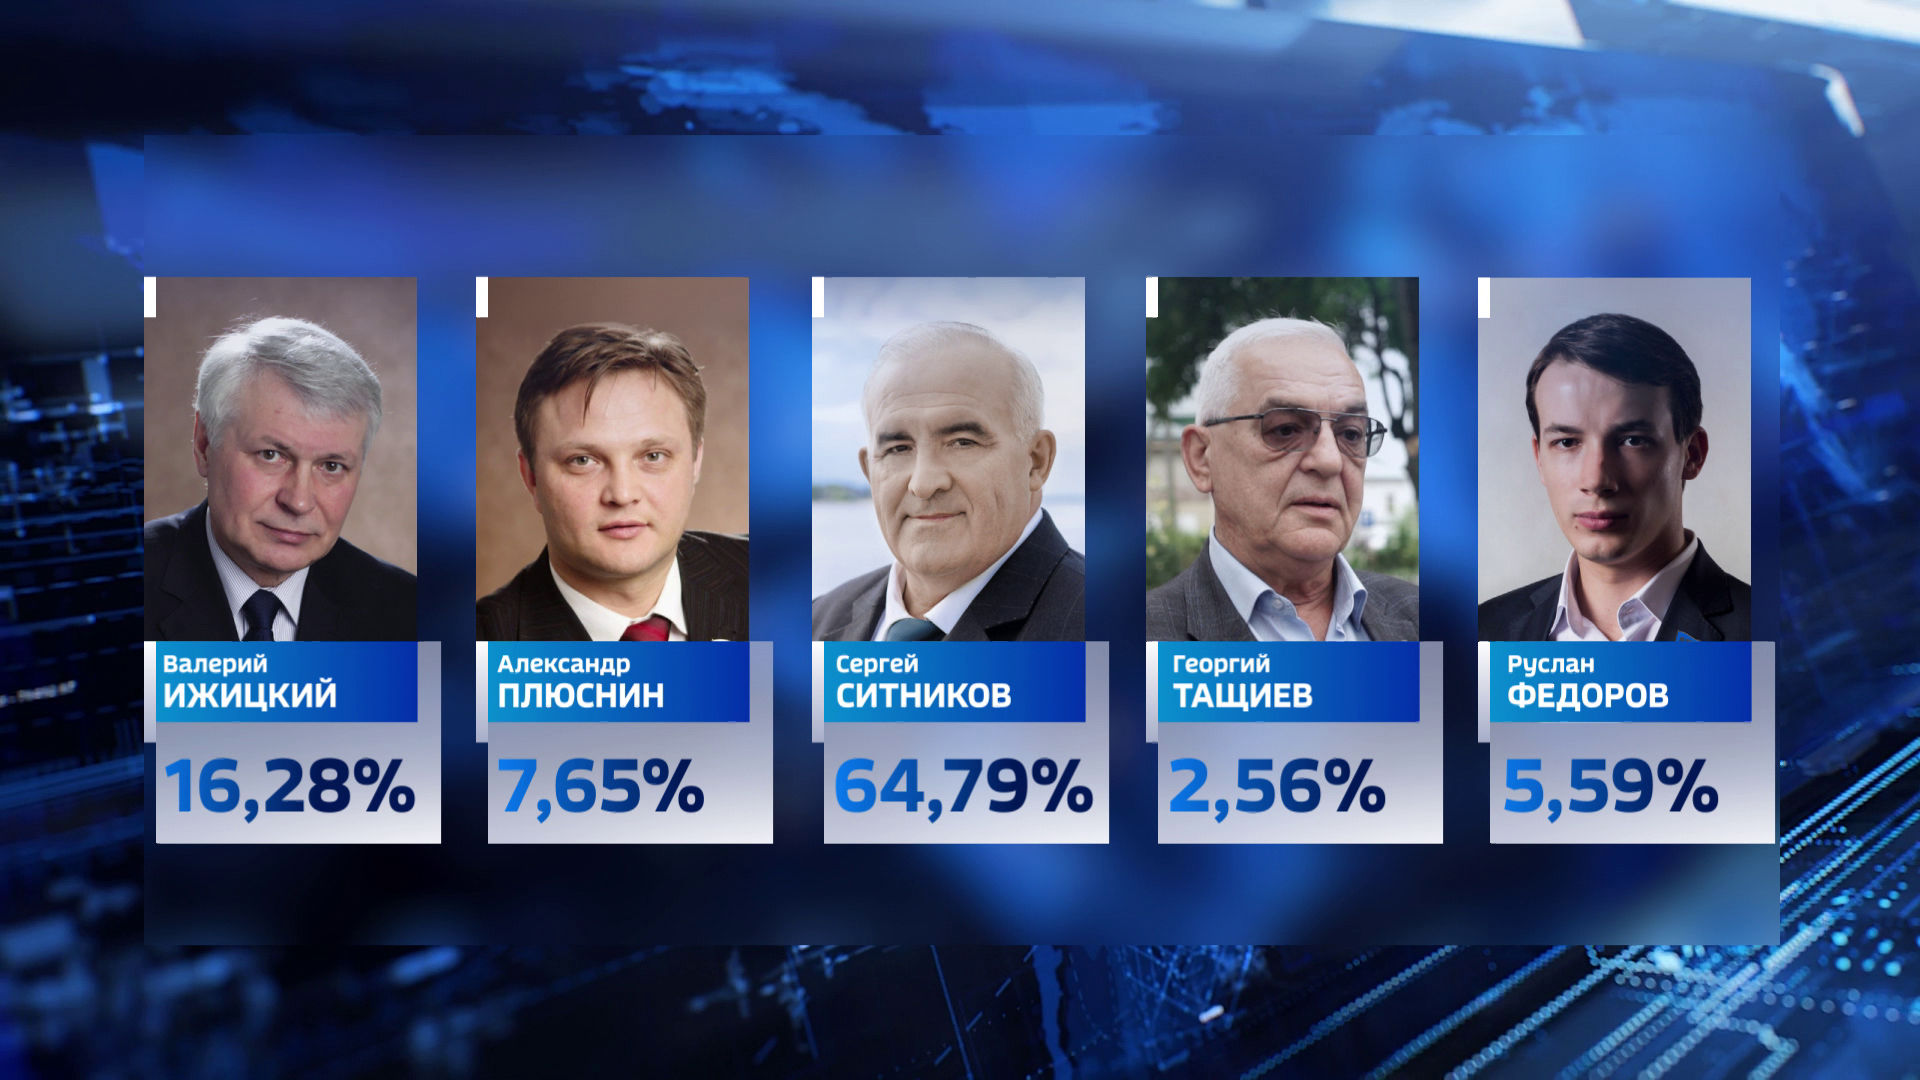 Итоги выборов в костромской области. Выборы губернатора Костромской области.